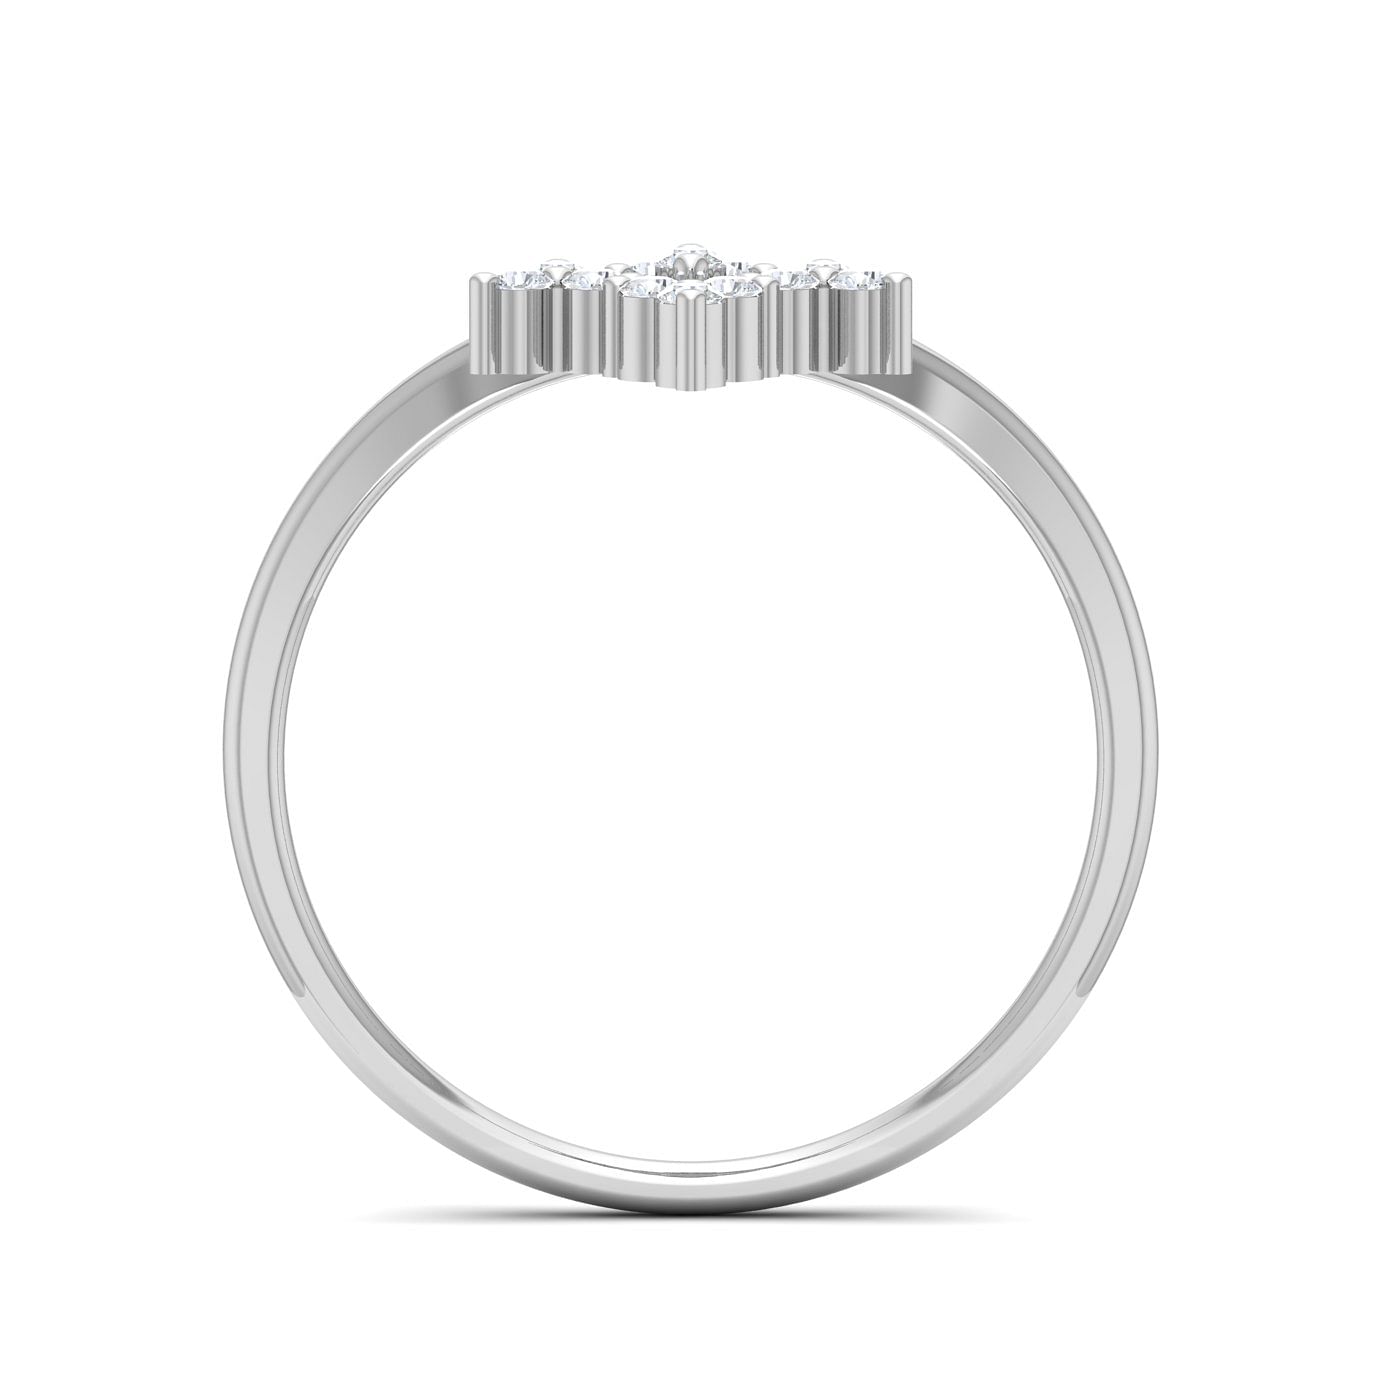 Trio Flower Design White Gold Diamond Ring For Women